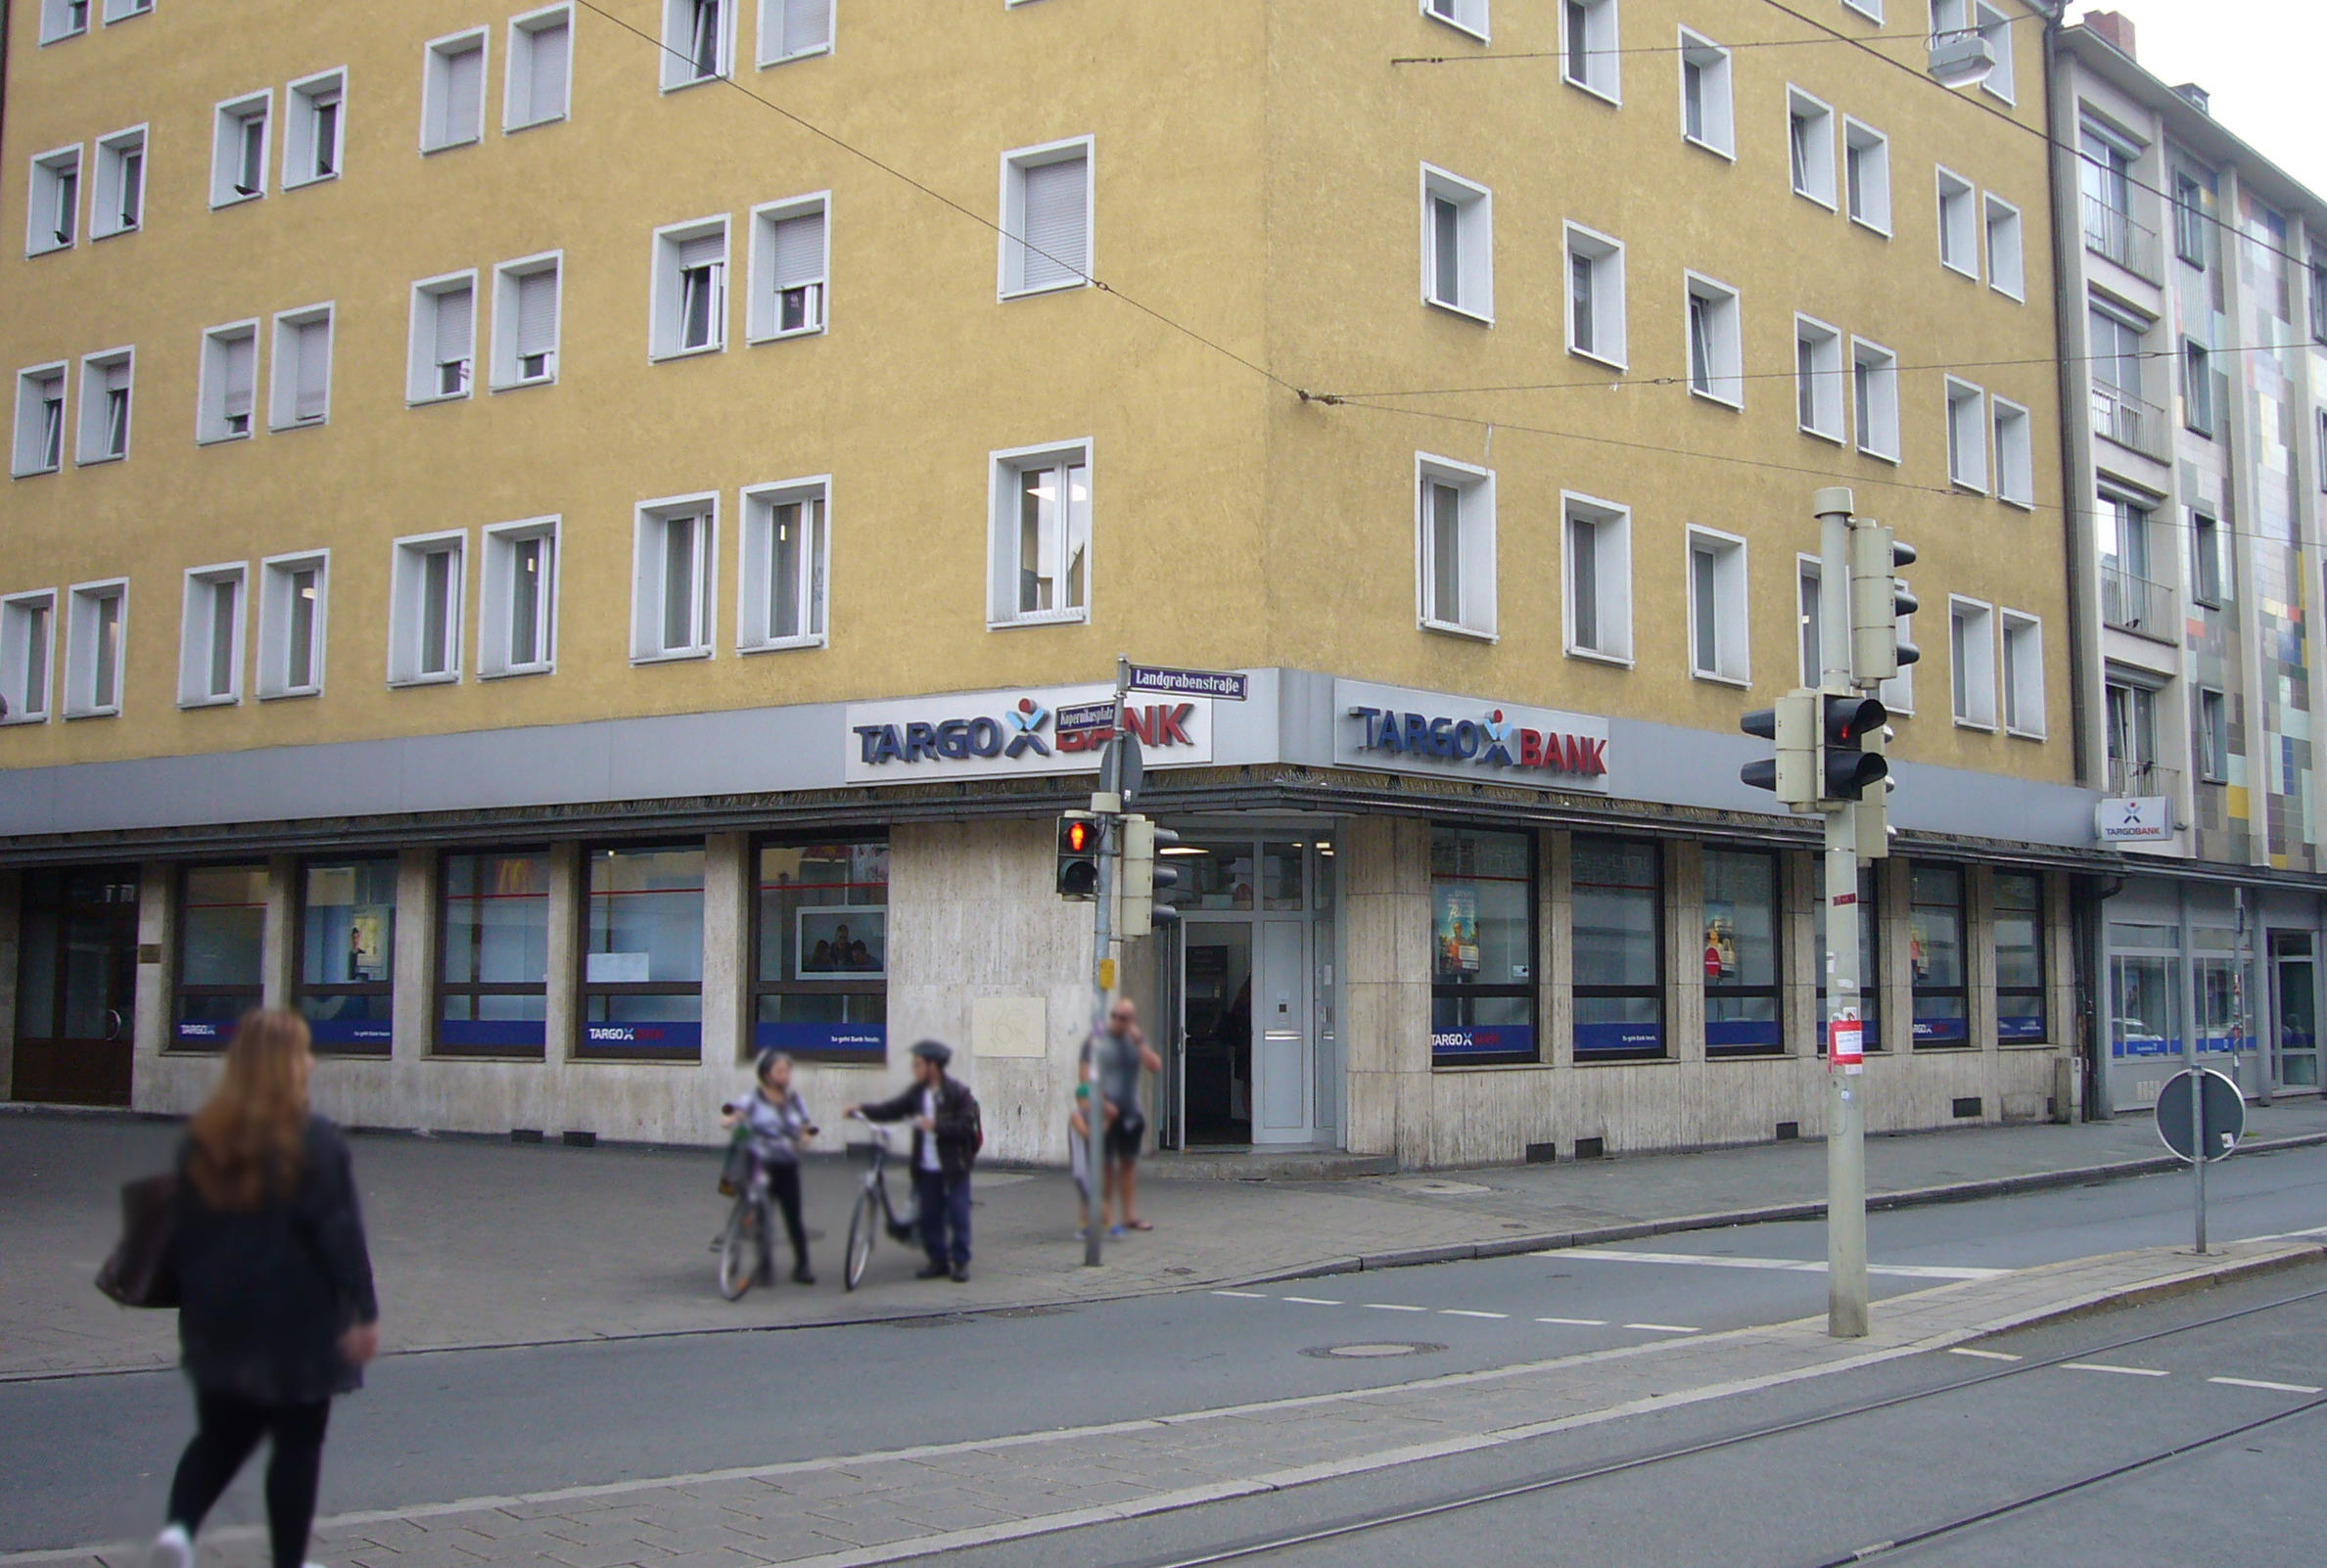 Bild 1 TARGOBANK in Nürnberg